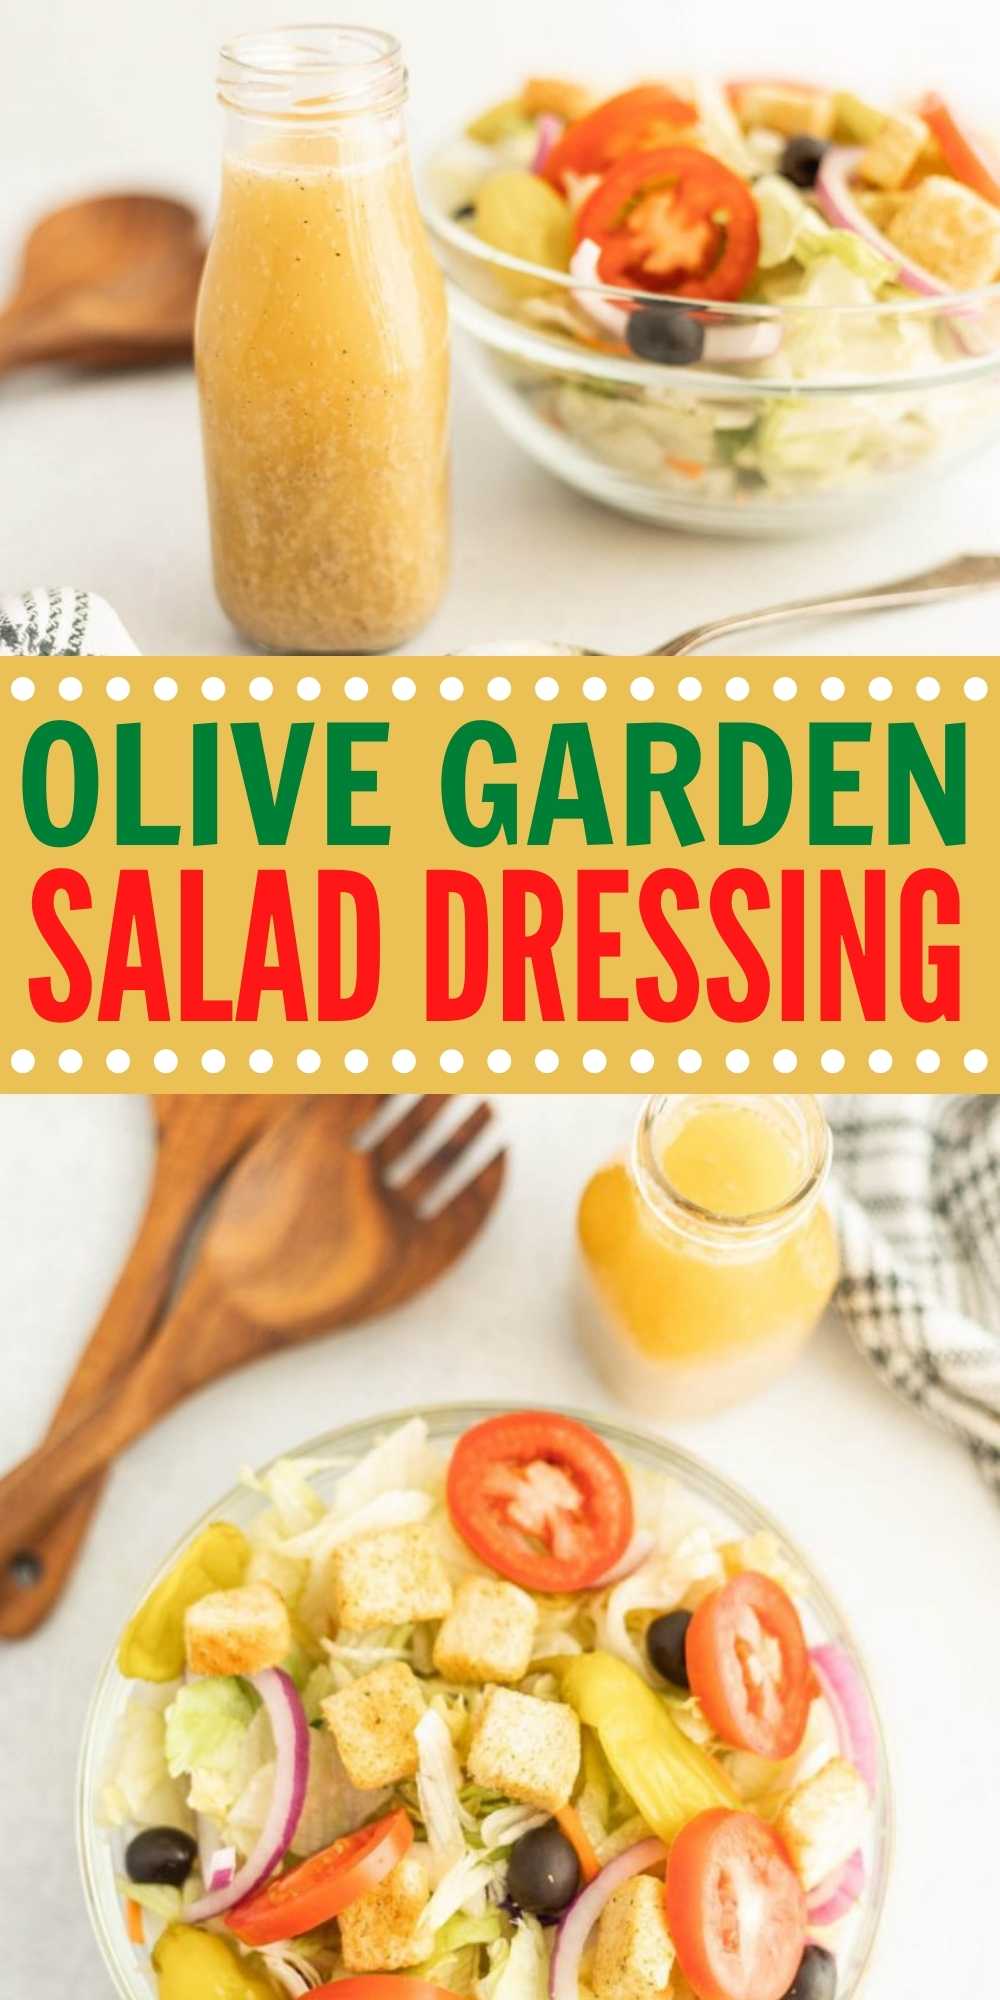 https://www.eatingonadime.com/wp-content/uploads/2022/07/Olive-Garden-Salad-Dressing-3-3.jpg